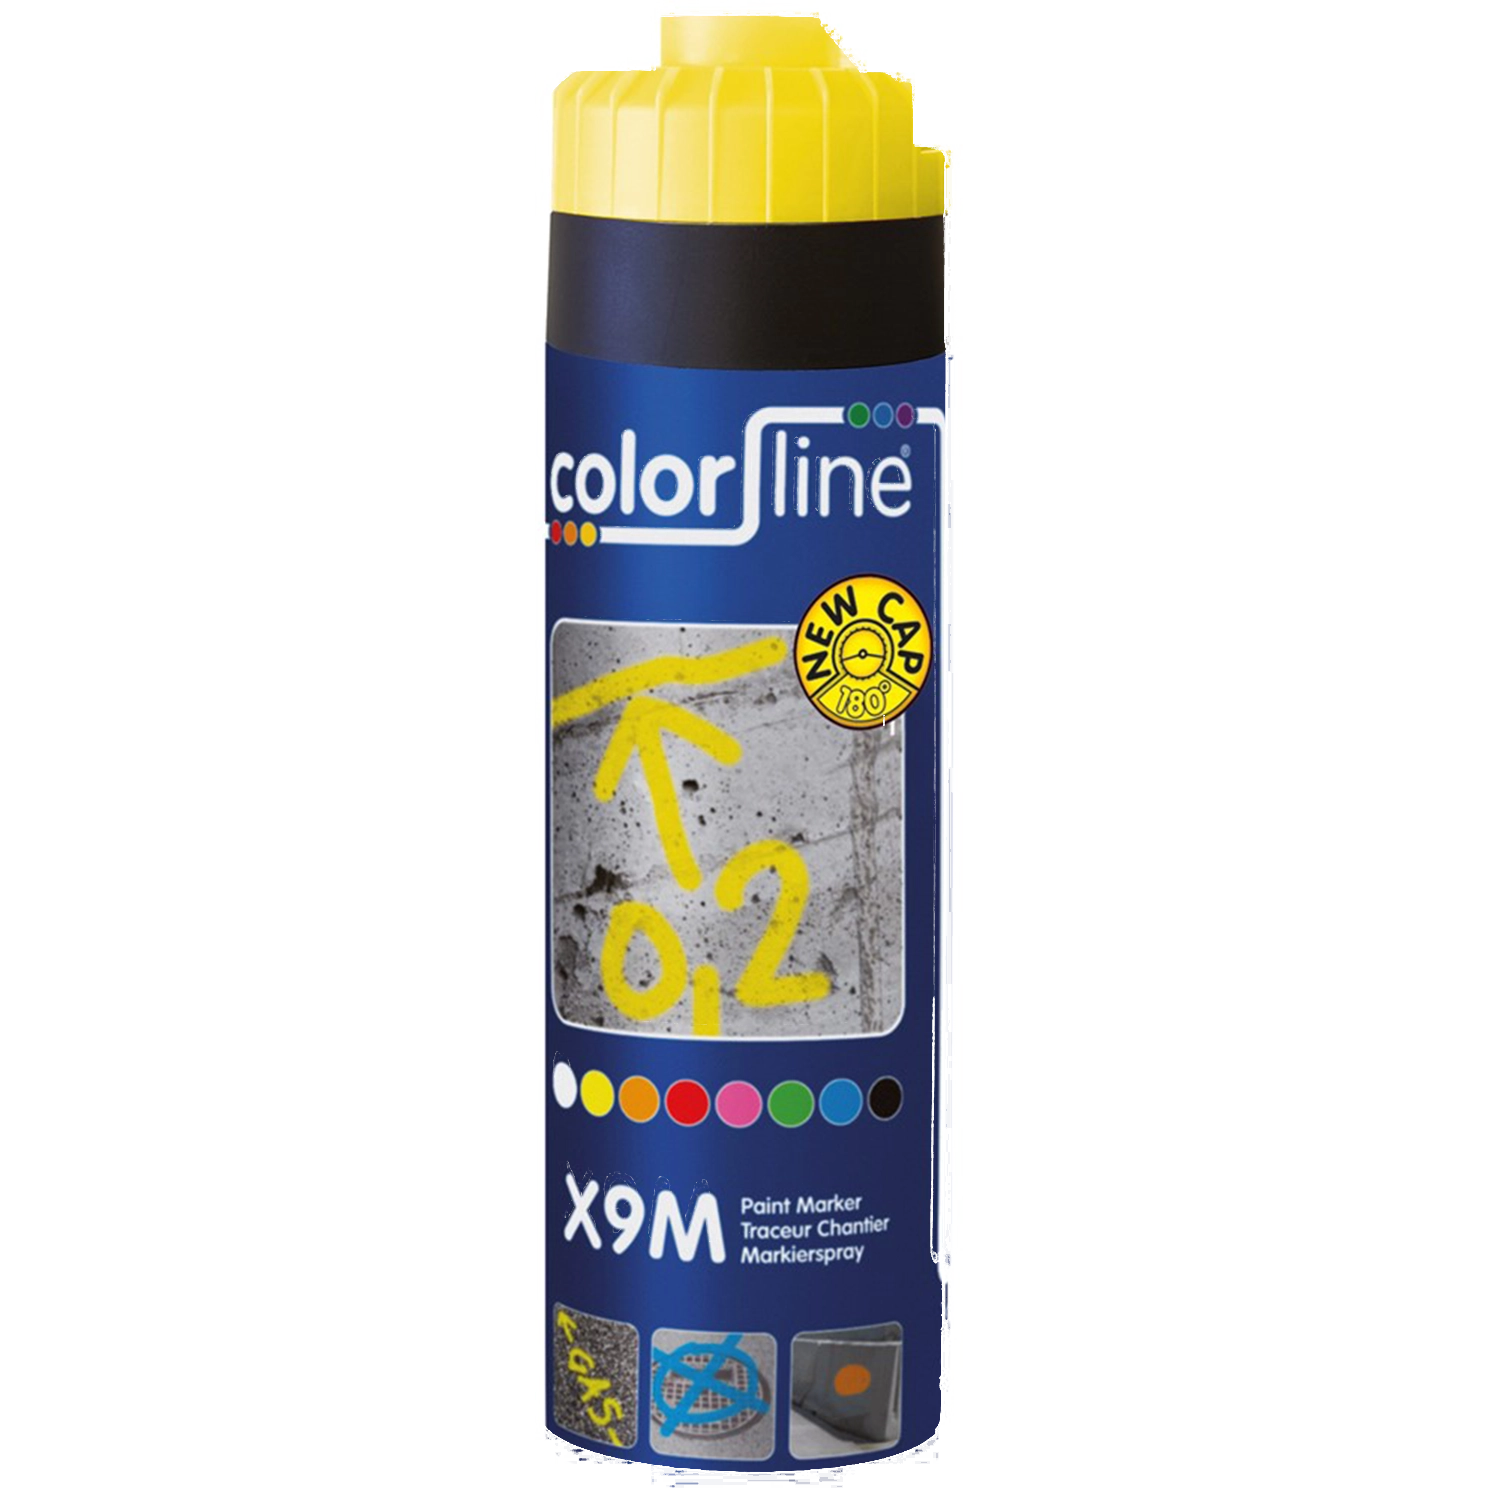 KNIPEX X9M Paint Marker - 500 Ml - Geel - Gele verfmarker met 500 ml inhoud en KNIPEX-logo.